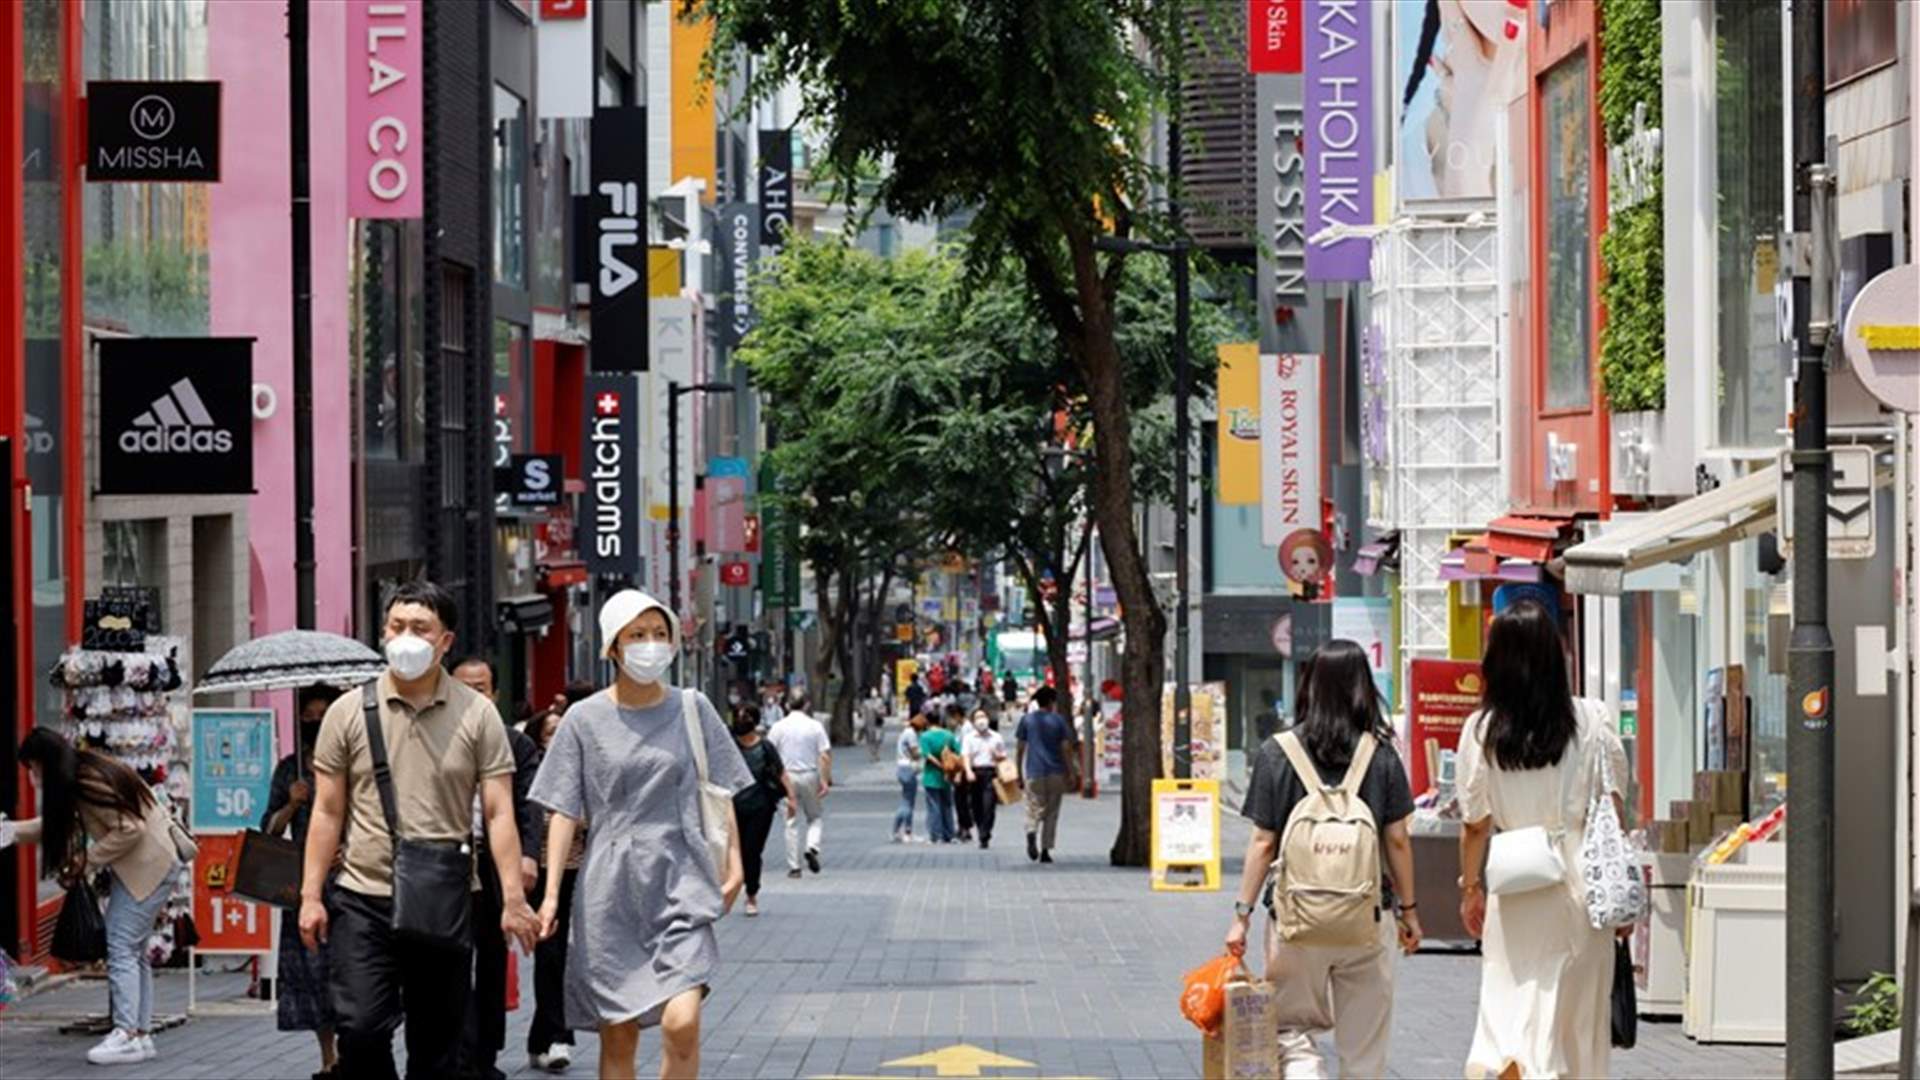 كوريا الجنوبية تعيد فرض قواعد التباعد الإجتماعي مع ارتفاع إصابات كورونا